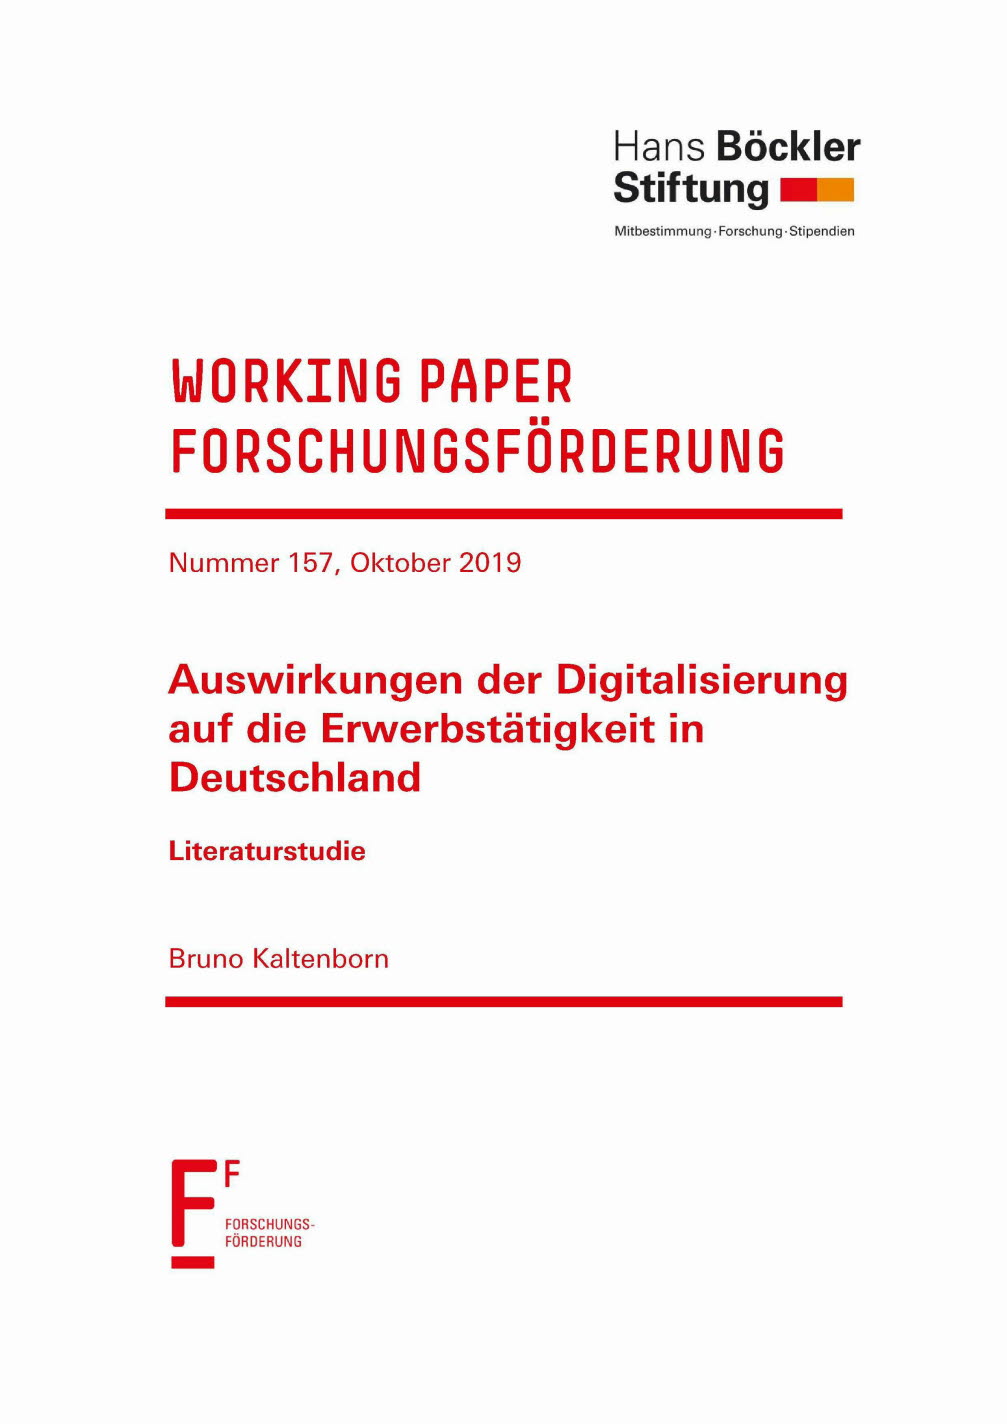 Auswirkungen der Digitalisierung auf die Erwerbstätigkeit in Deutschland